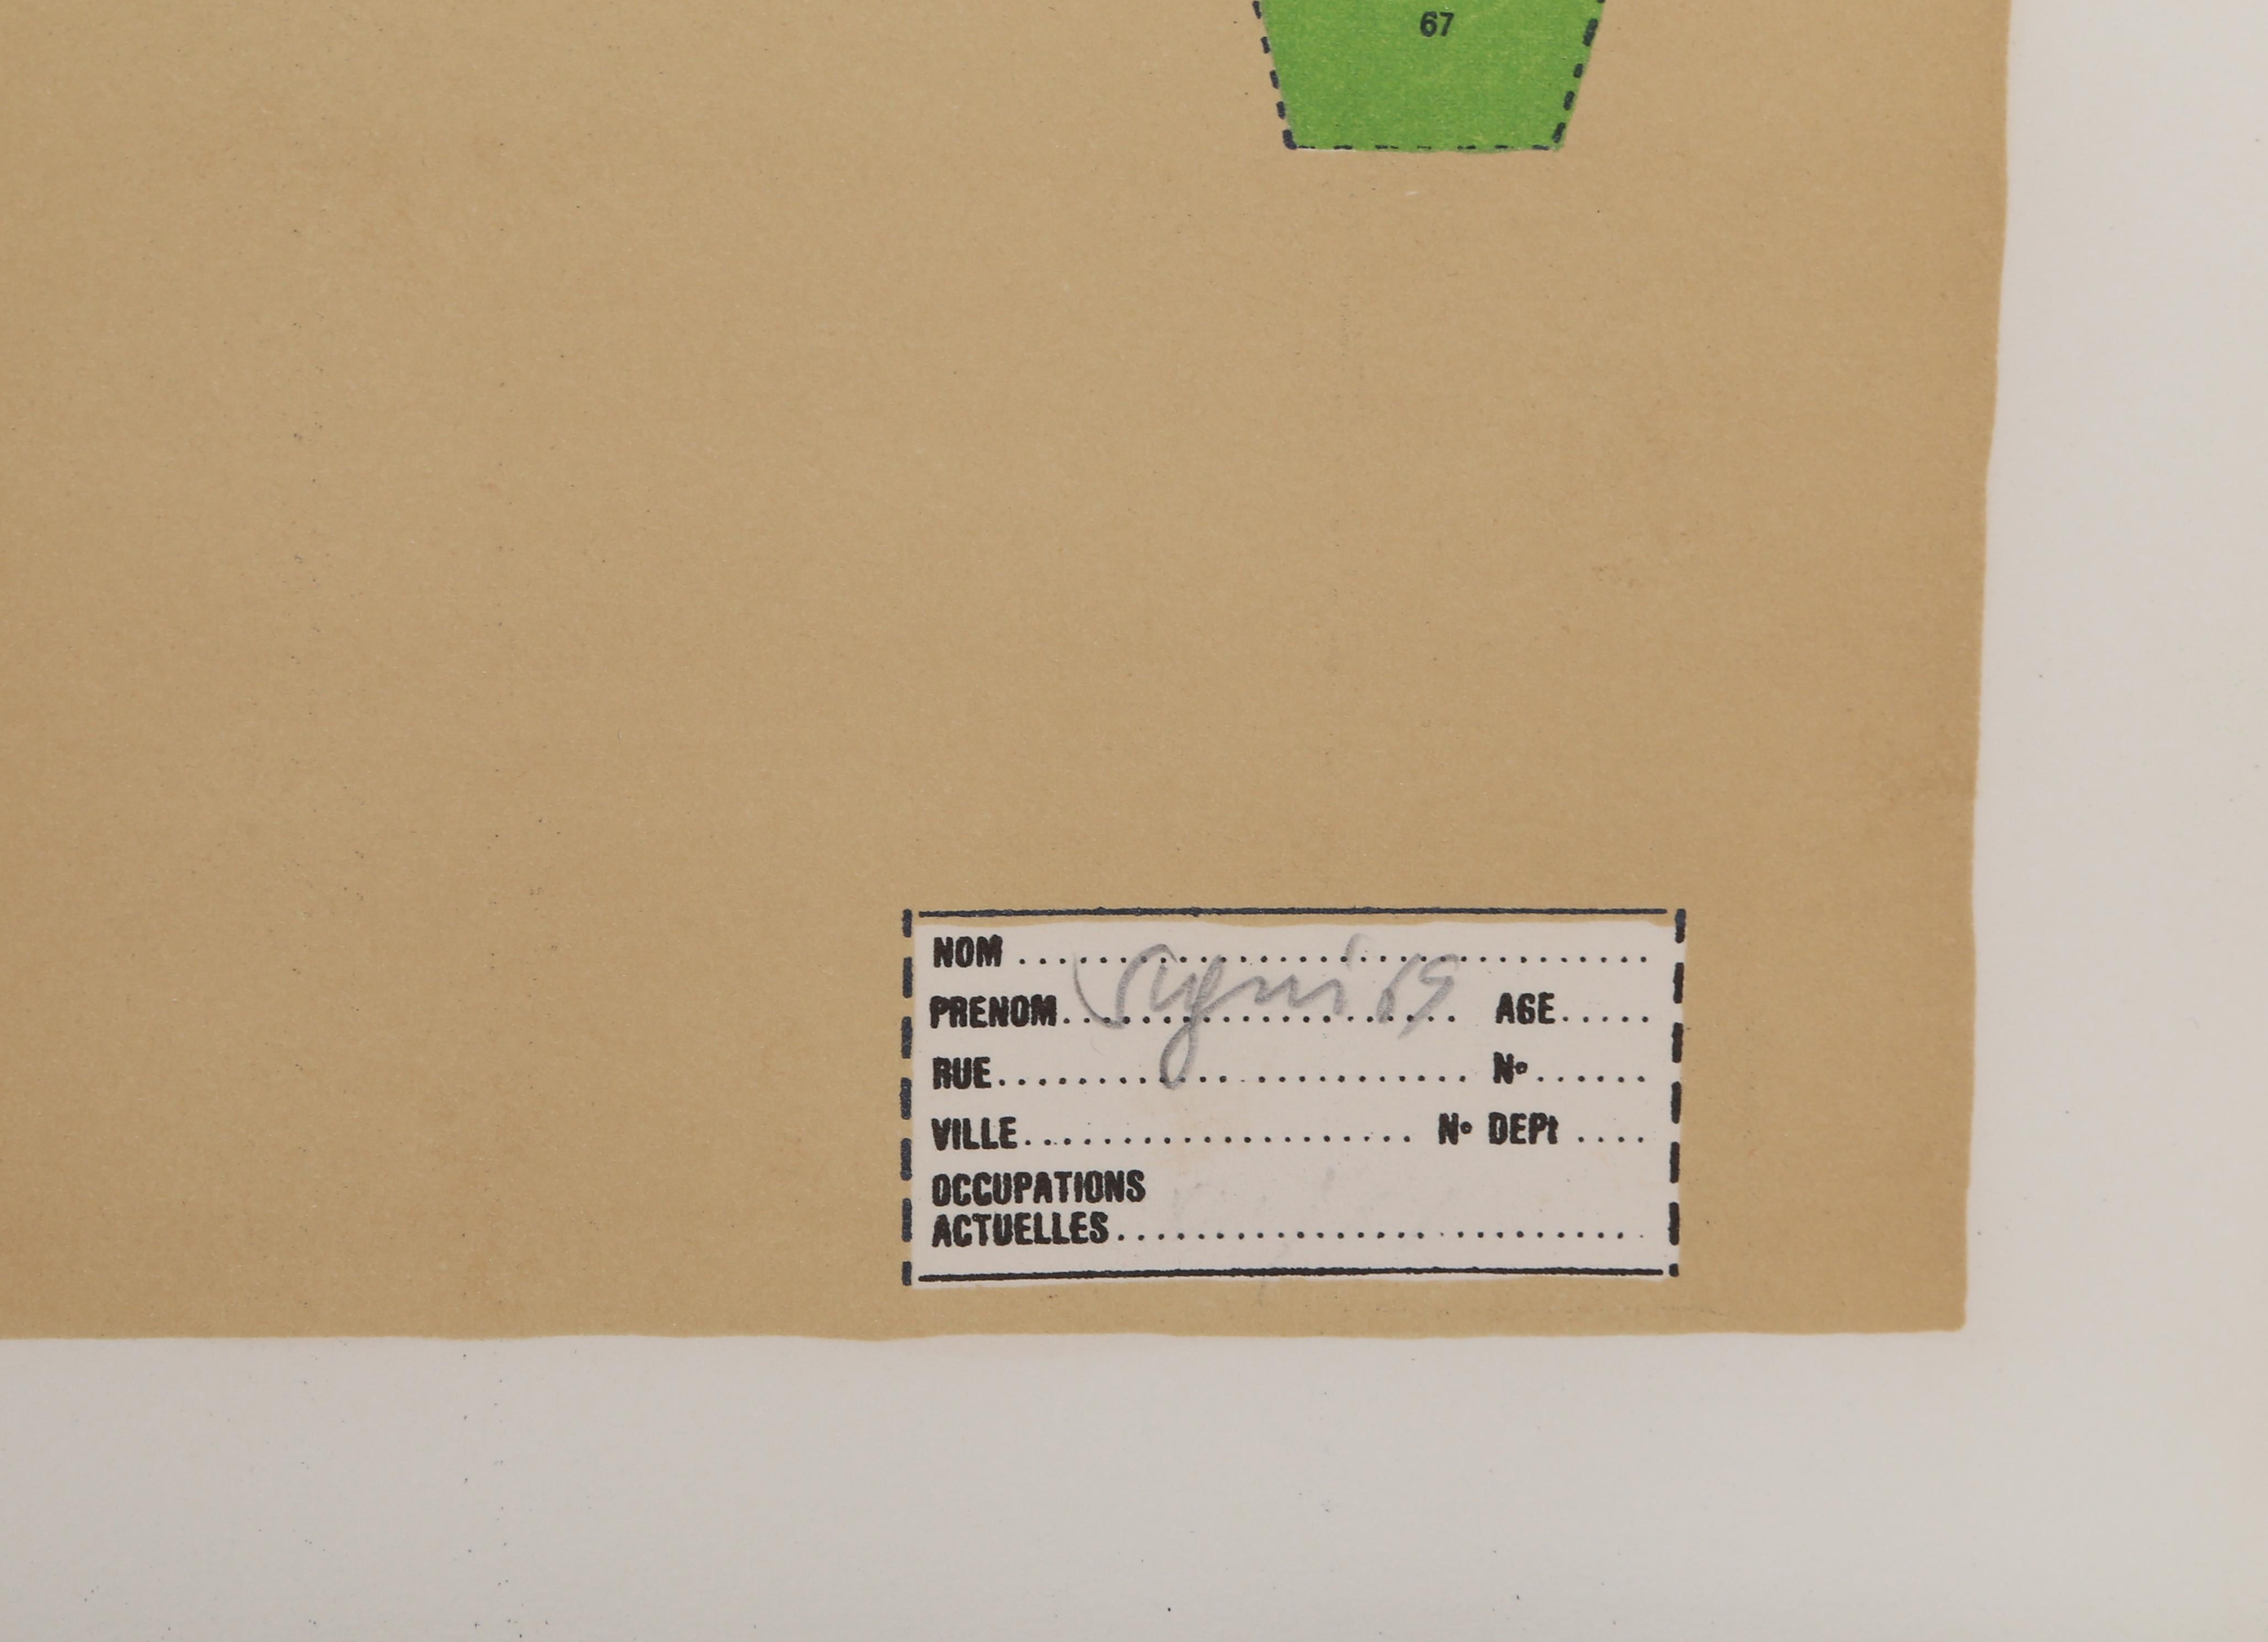 Künstler: Antonio Segui, Argentinier (1934 - )
Titel:	Manhattan aux Enzyme
Jahr: 1970
Medium:	Siebdruck, signiert und nummeriert mit Bleistift
Auflage: 100
Größe: 22 x 30 Zoll (55,88 x 76,2 cm)